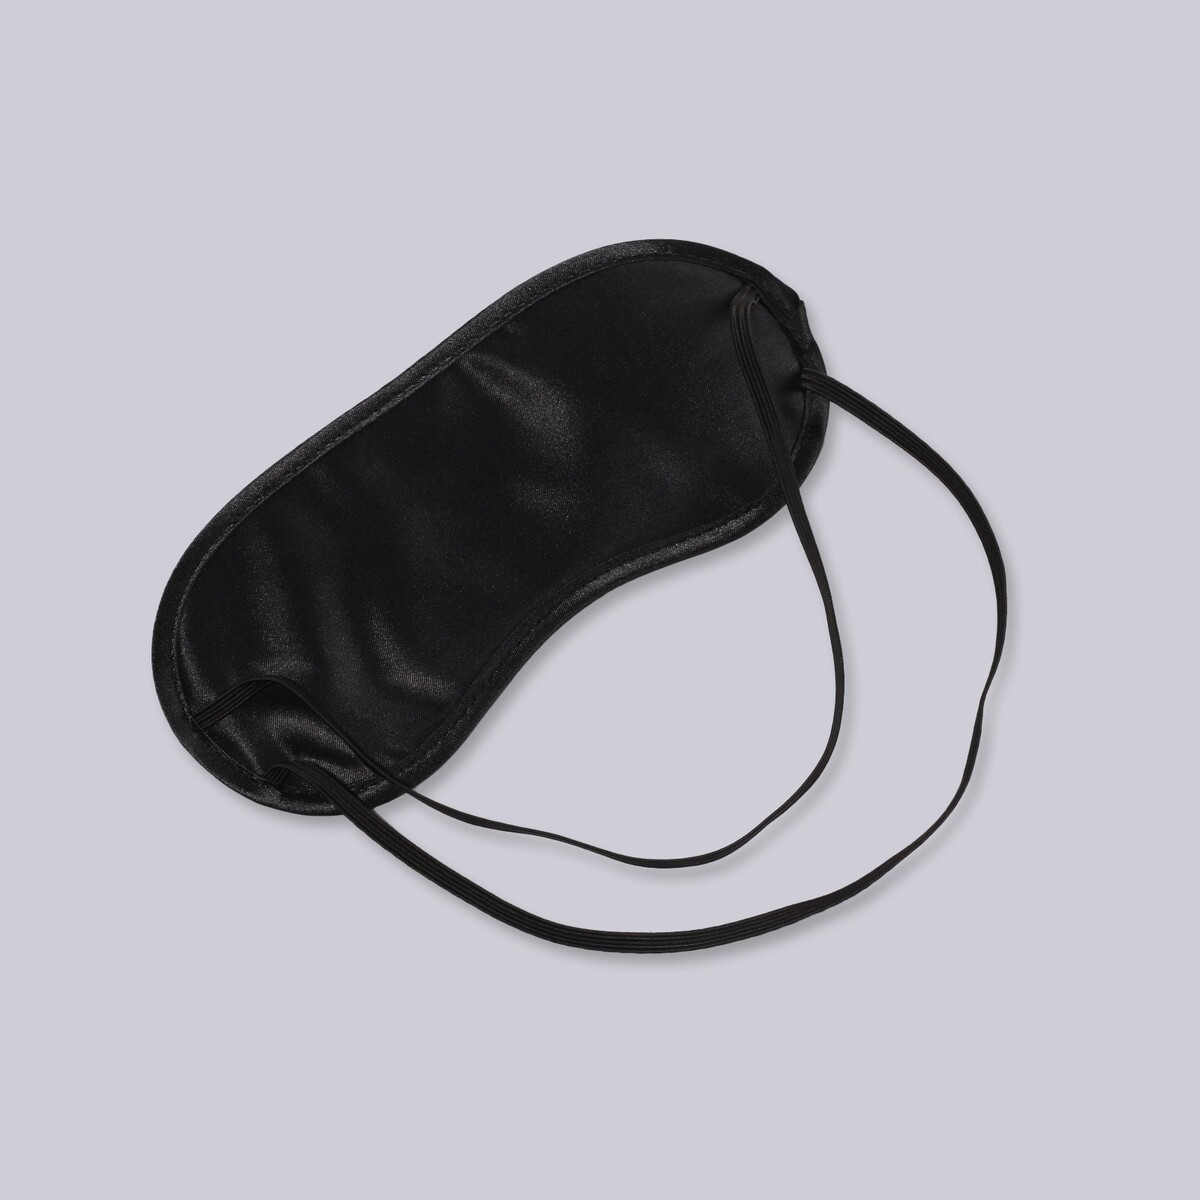 фото Маска для сна, сатиновая, двойная резинка, 19 × 8,5 см, цвет черный onlitop